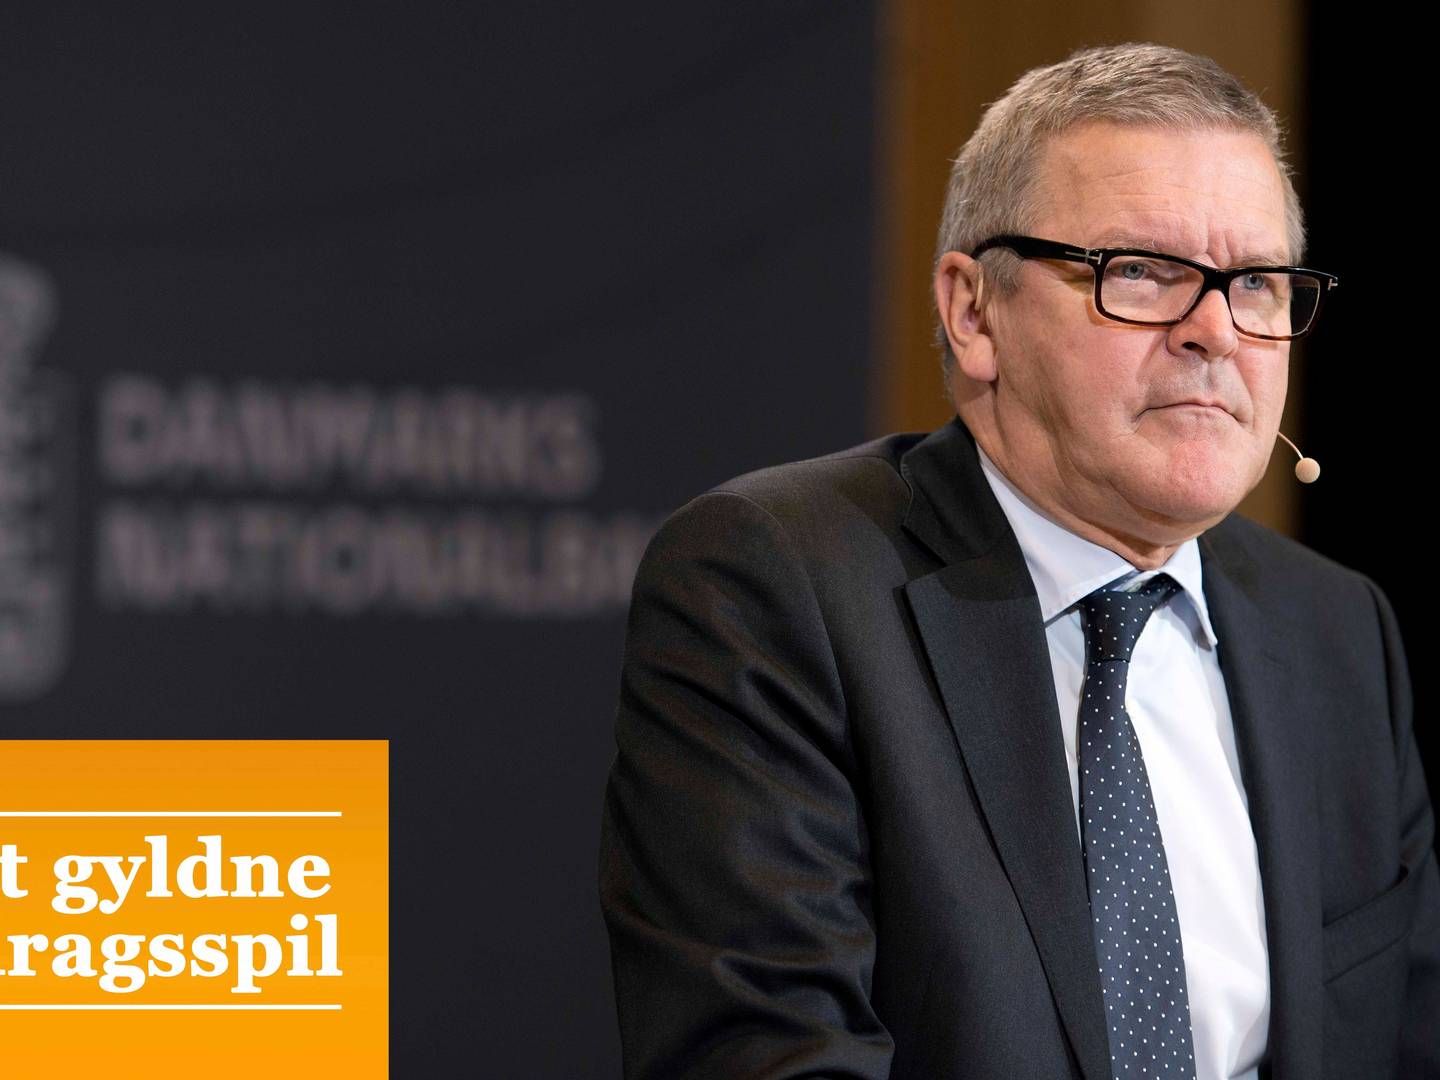 Nationalbankdirektør Lars Rohde mener ikke, at realkredittens forklaring på bidragsforhøjelserne holder. | Foto: Lars Krabbe/POLFOTO